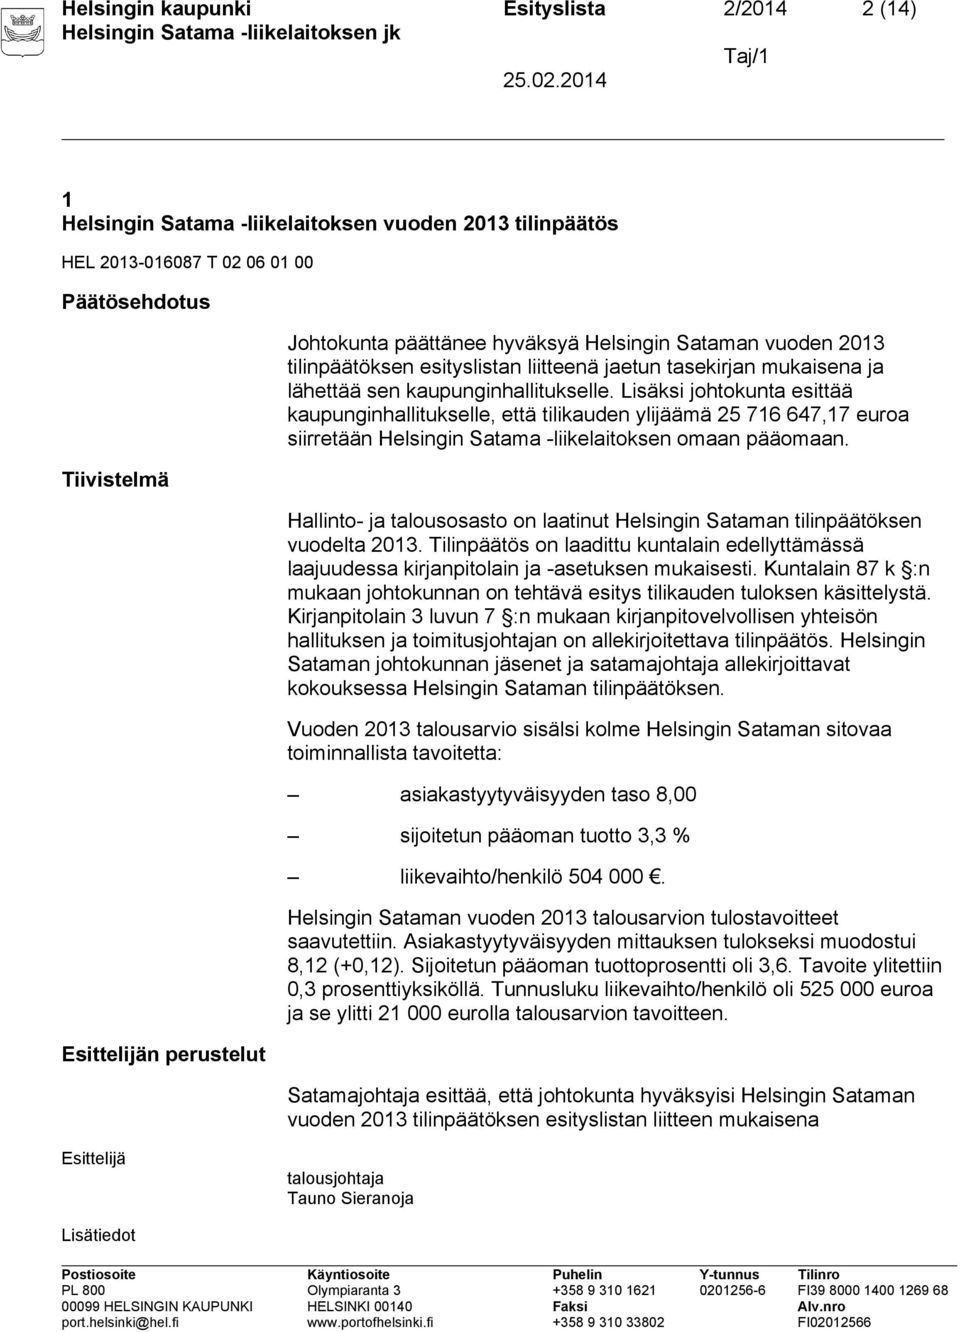 Lisäksi johtokunta esittää kaupunginhallitukselle, että tilikauden ylijäämä 25 716 647,17 euroa siirretään Helsingin Satama -liikelaitoksen omaan pääomaan.